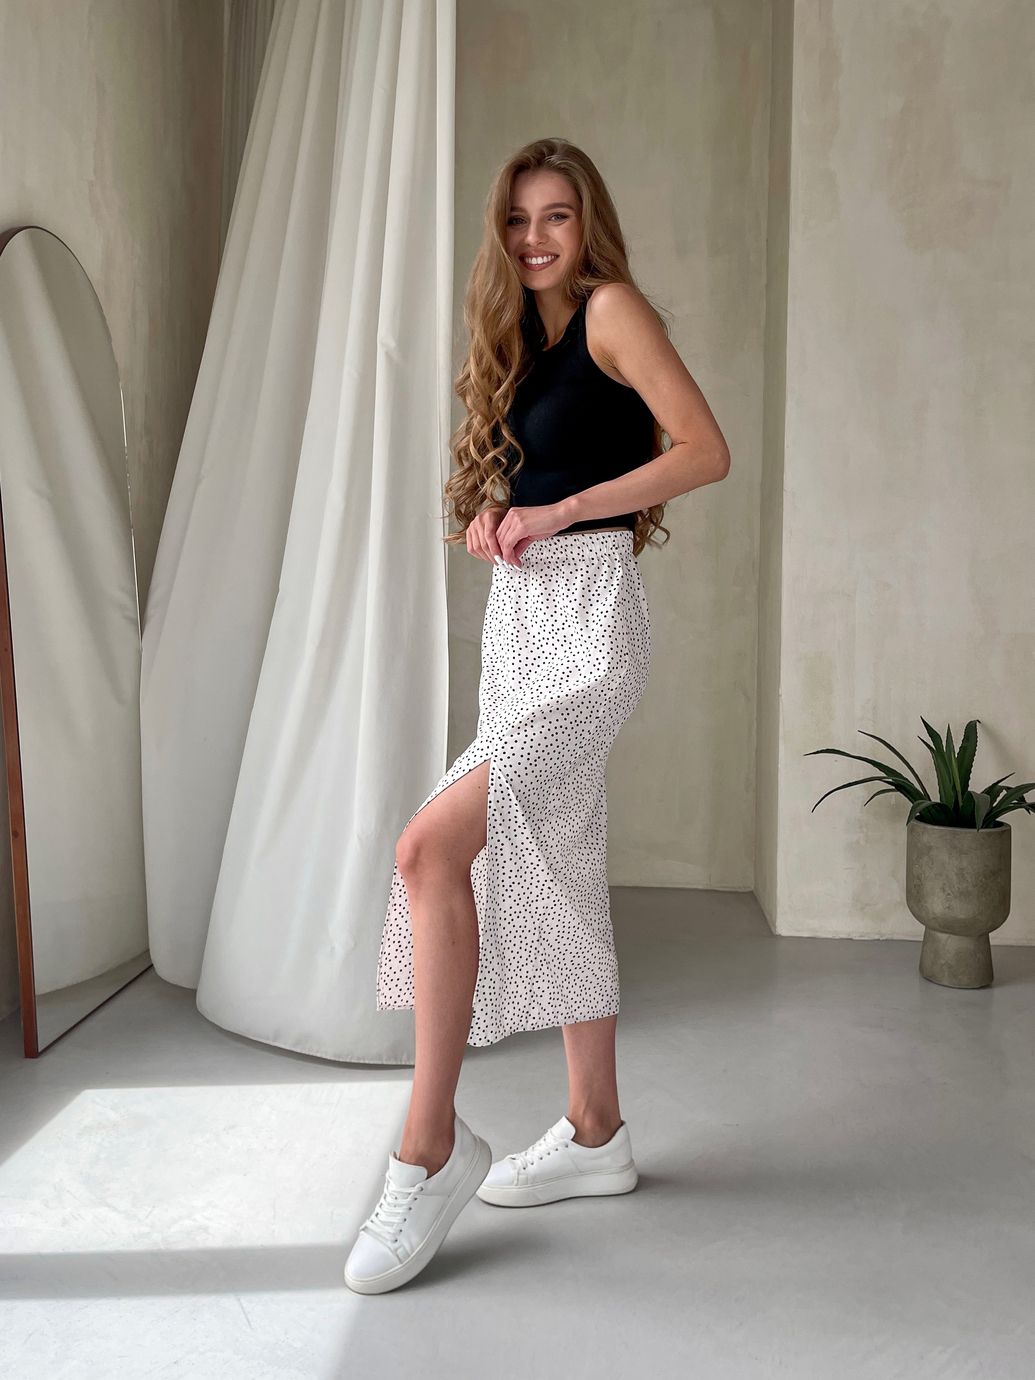 Купить Длинная женская юбка ниже колена с размером в горох Merlini Парма 400000102, размер 46-48 (L-XL) в интернет-магазине